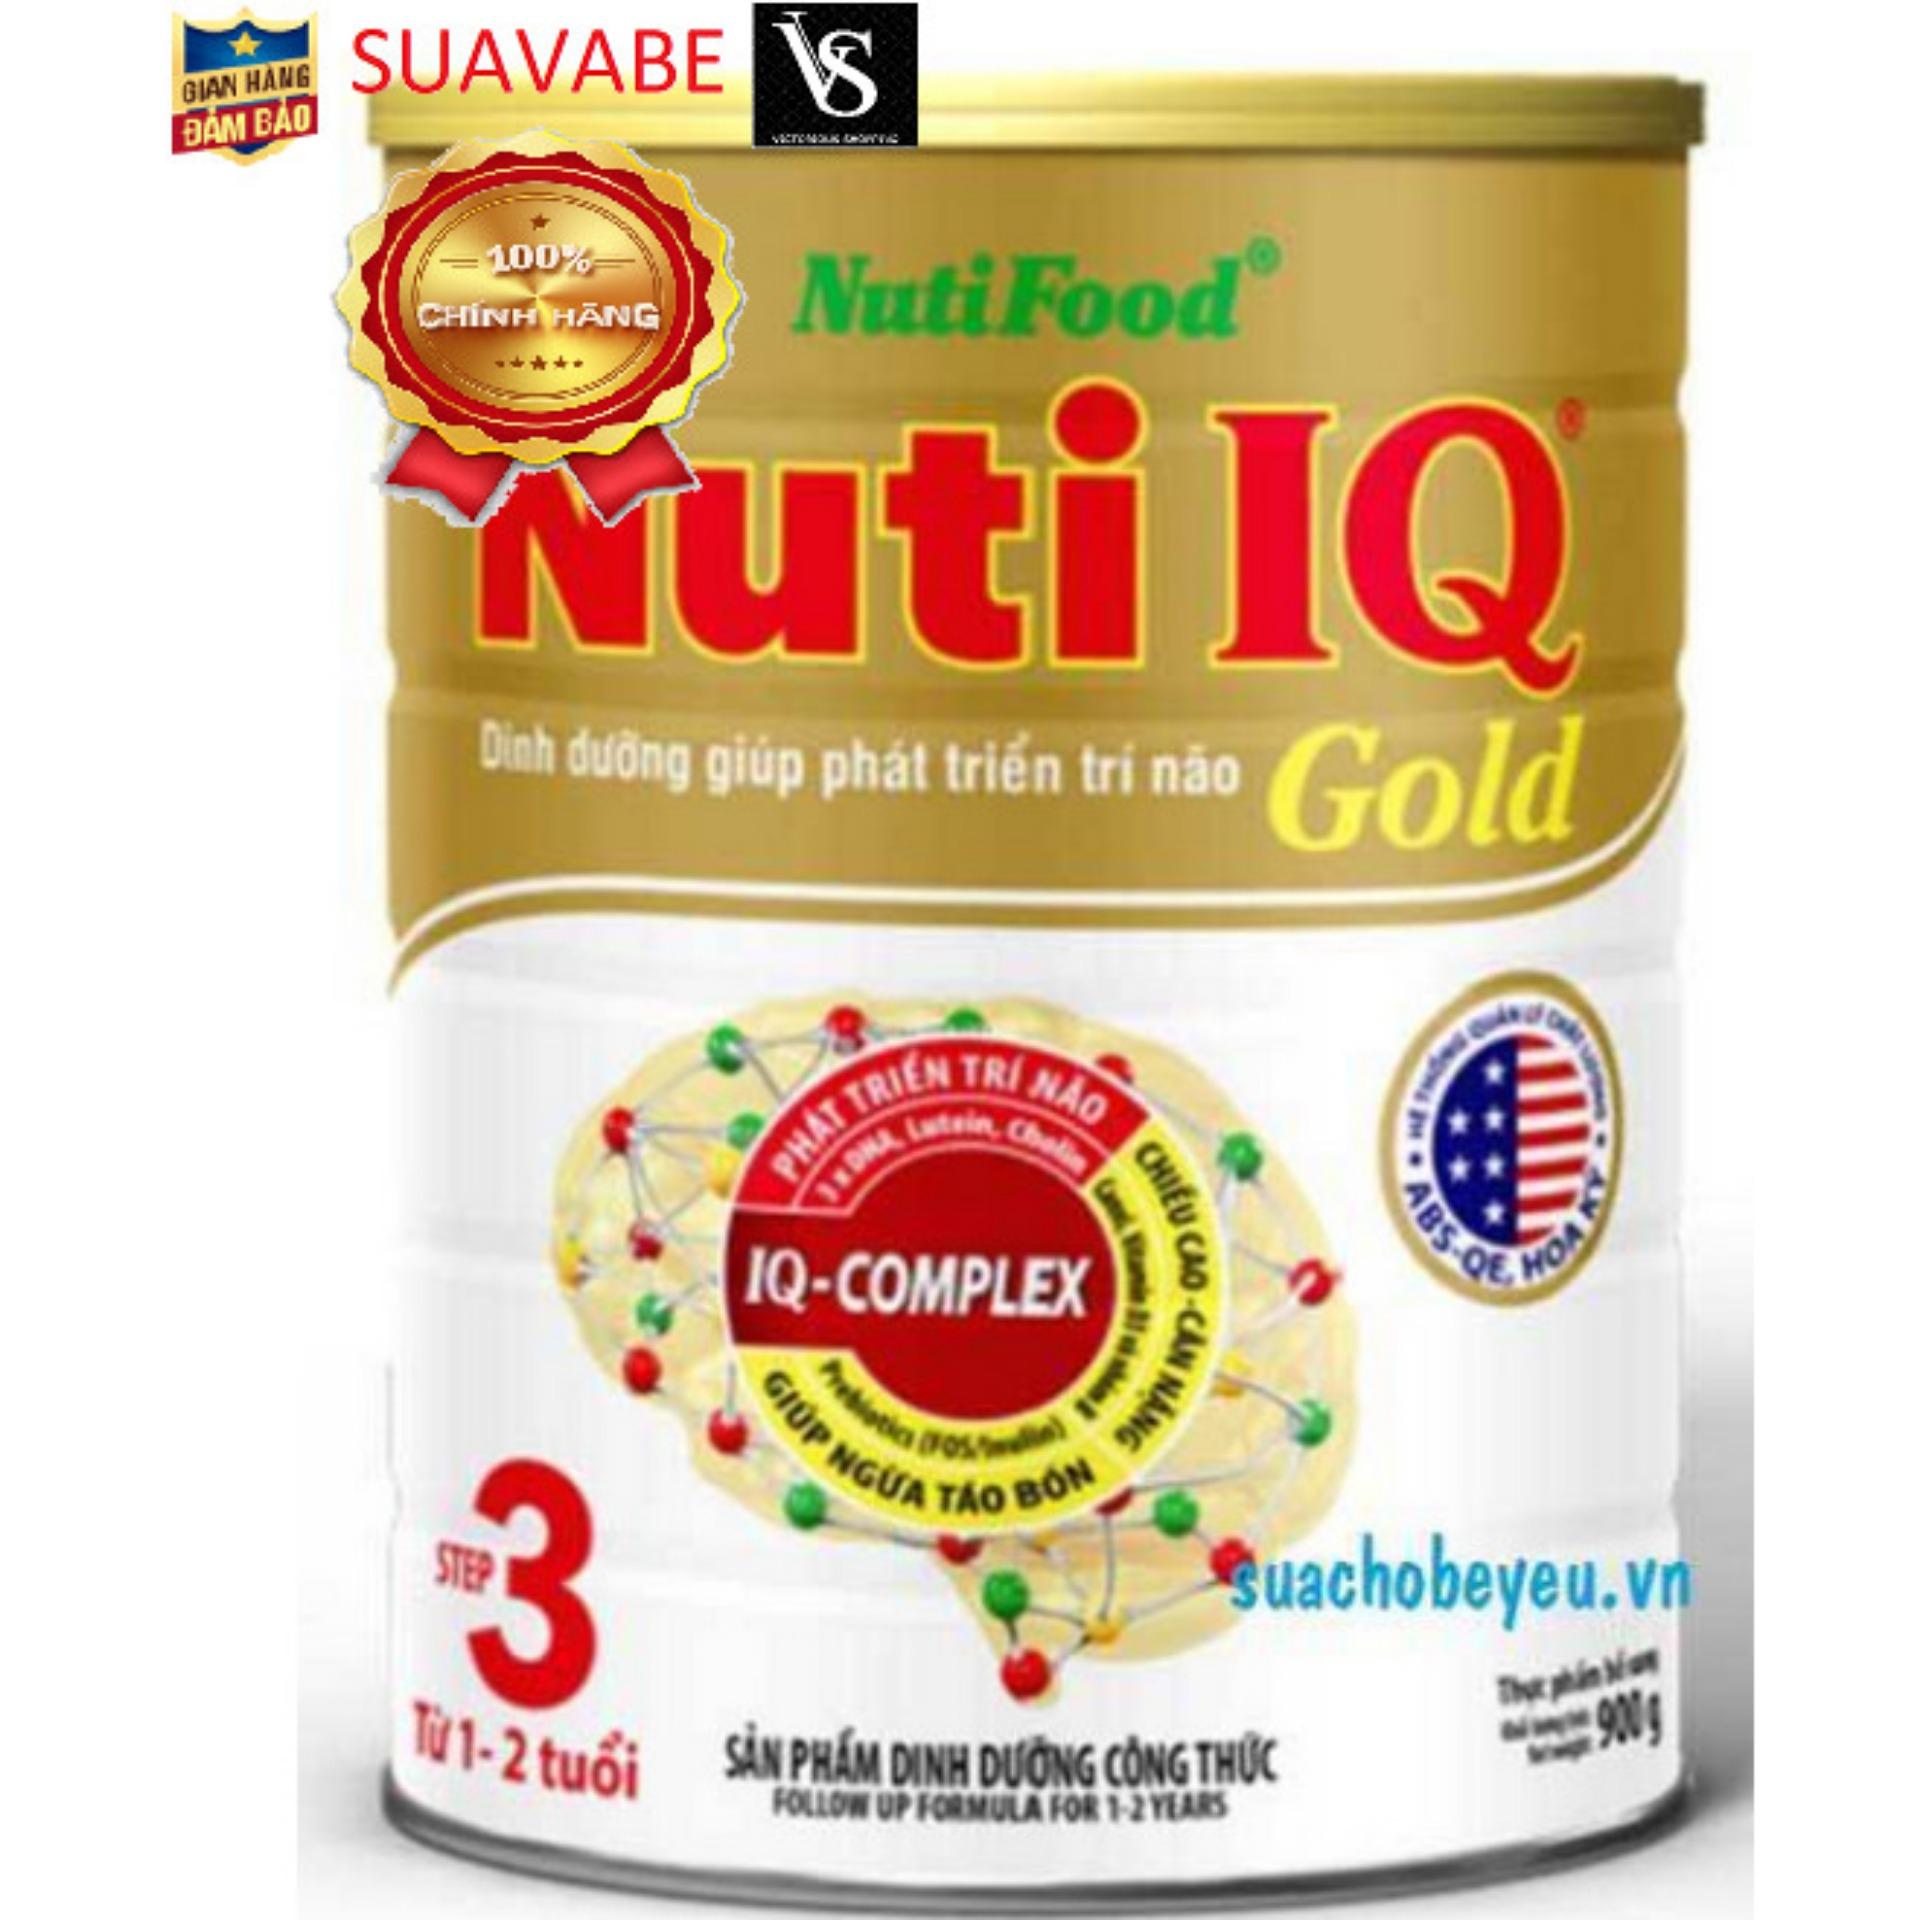 Sữa Nuti IQ Gold 3 Nutifood 900g